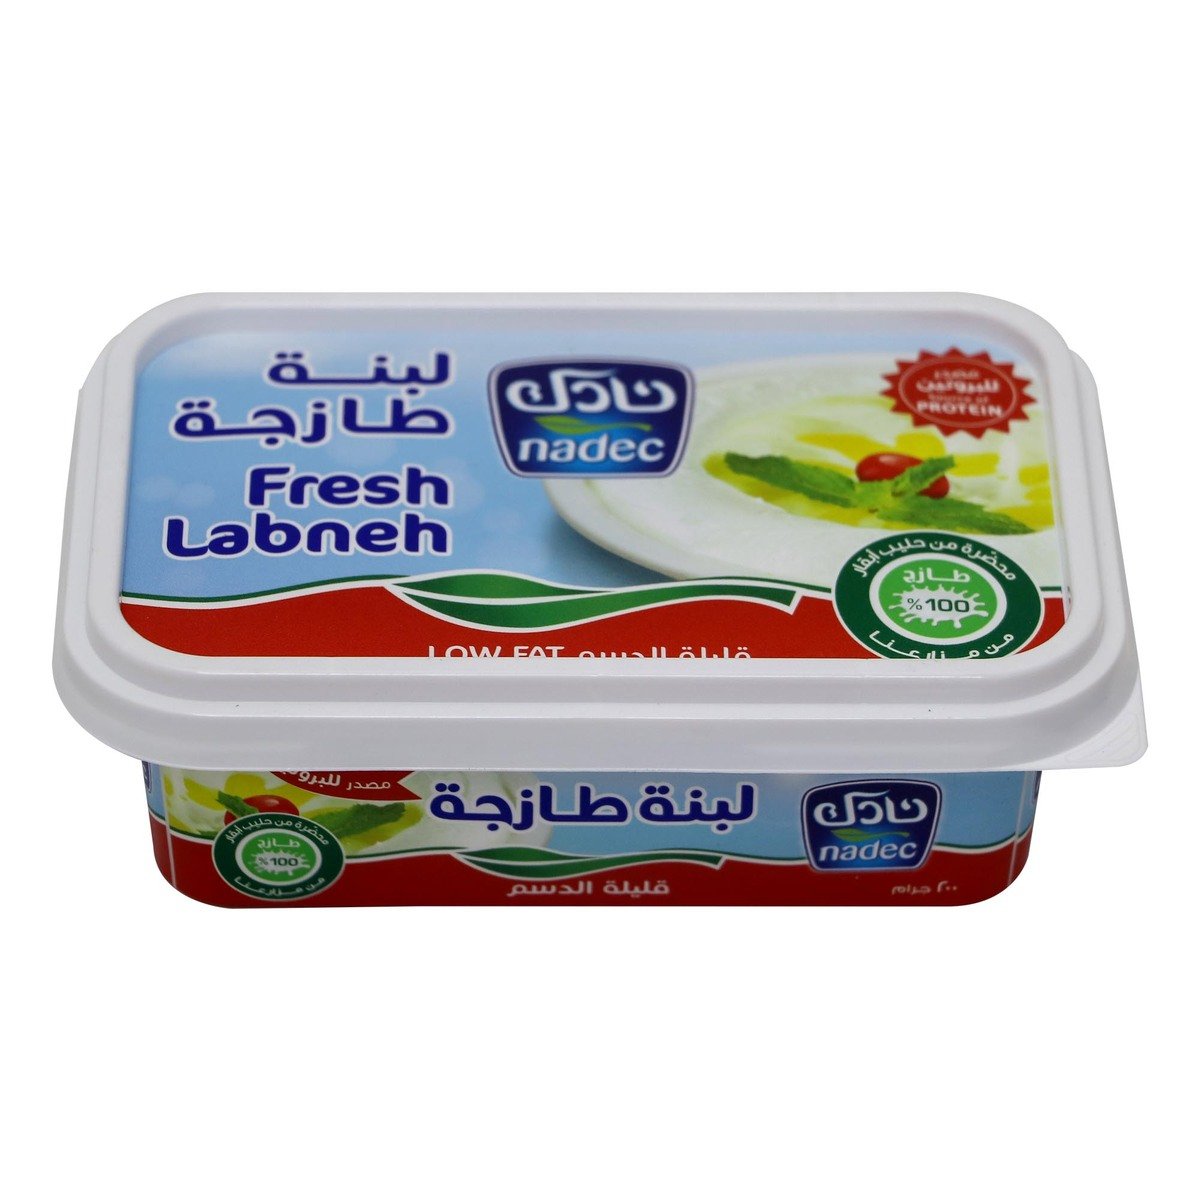 Buy Nadec Fresh Labneh Low Fat 200g Online at Best Price | Labneh | Lulu KSA in Saudi Arabia